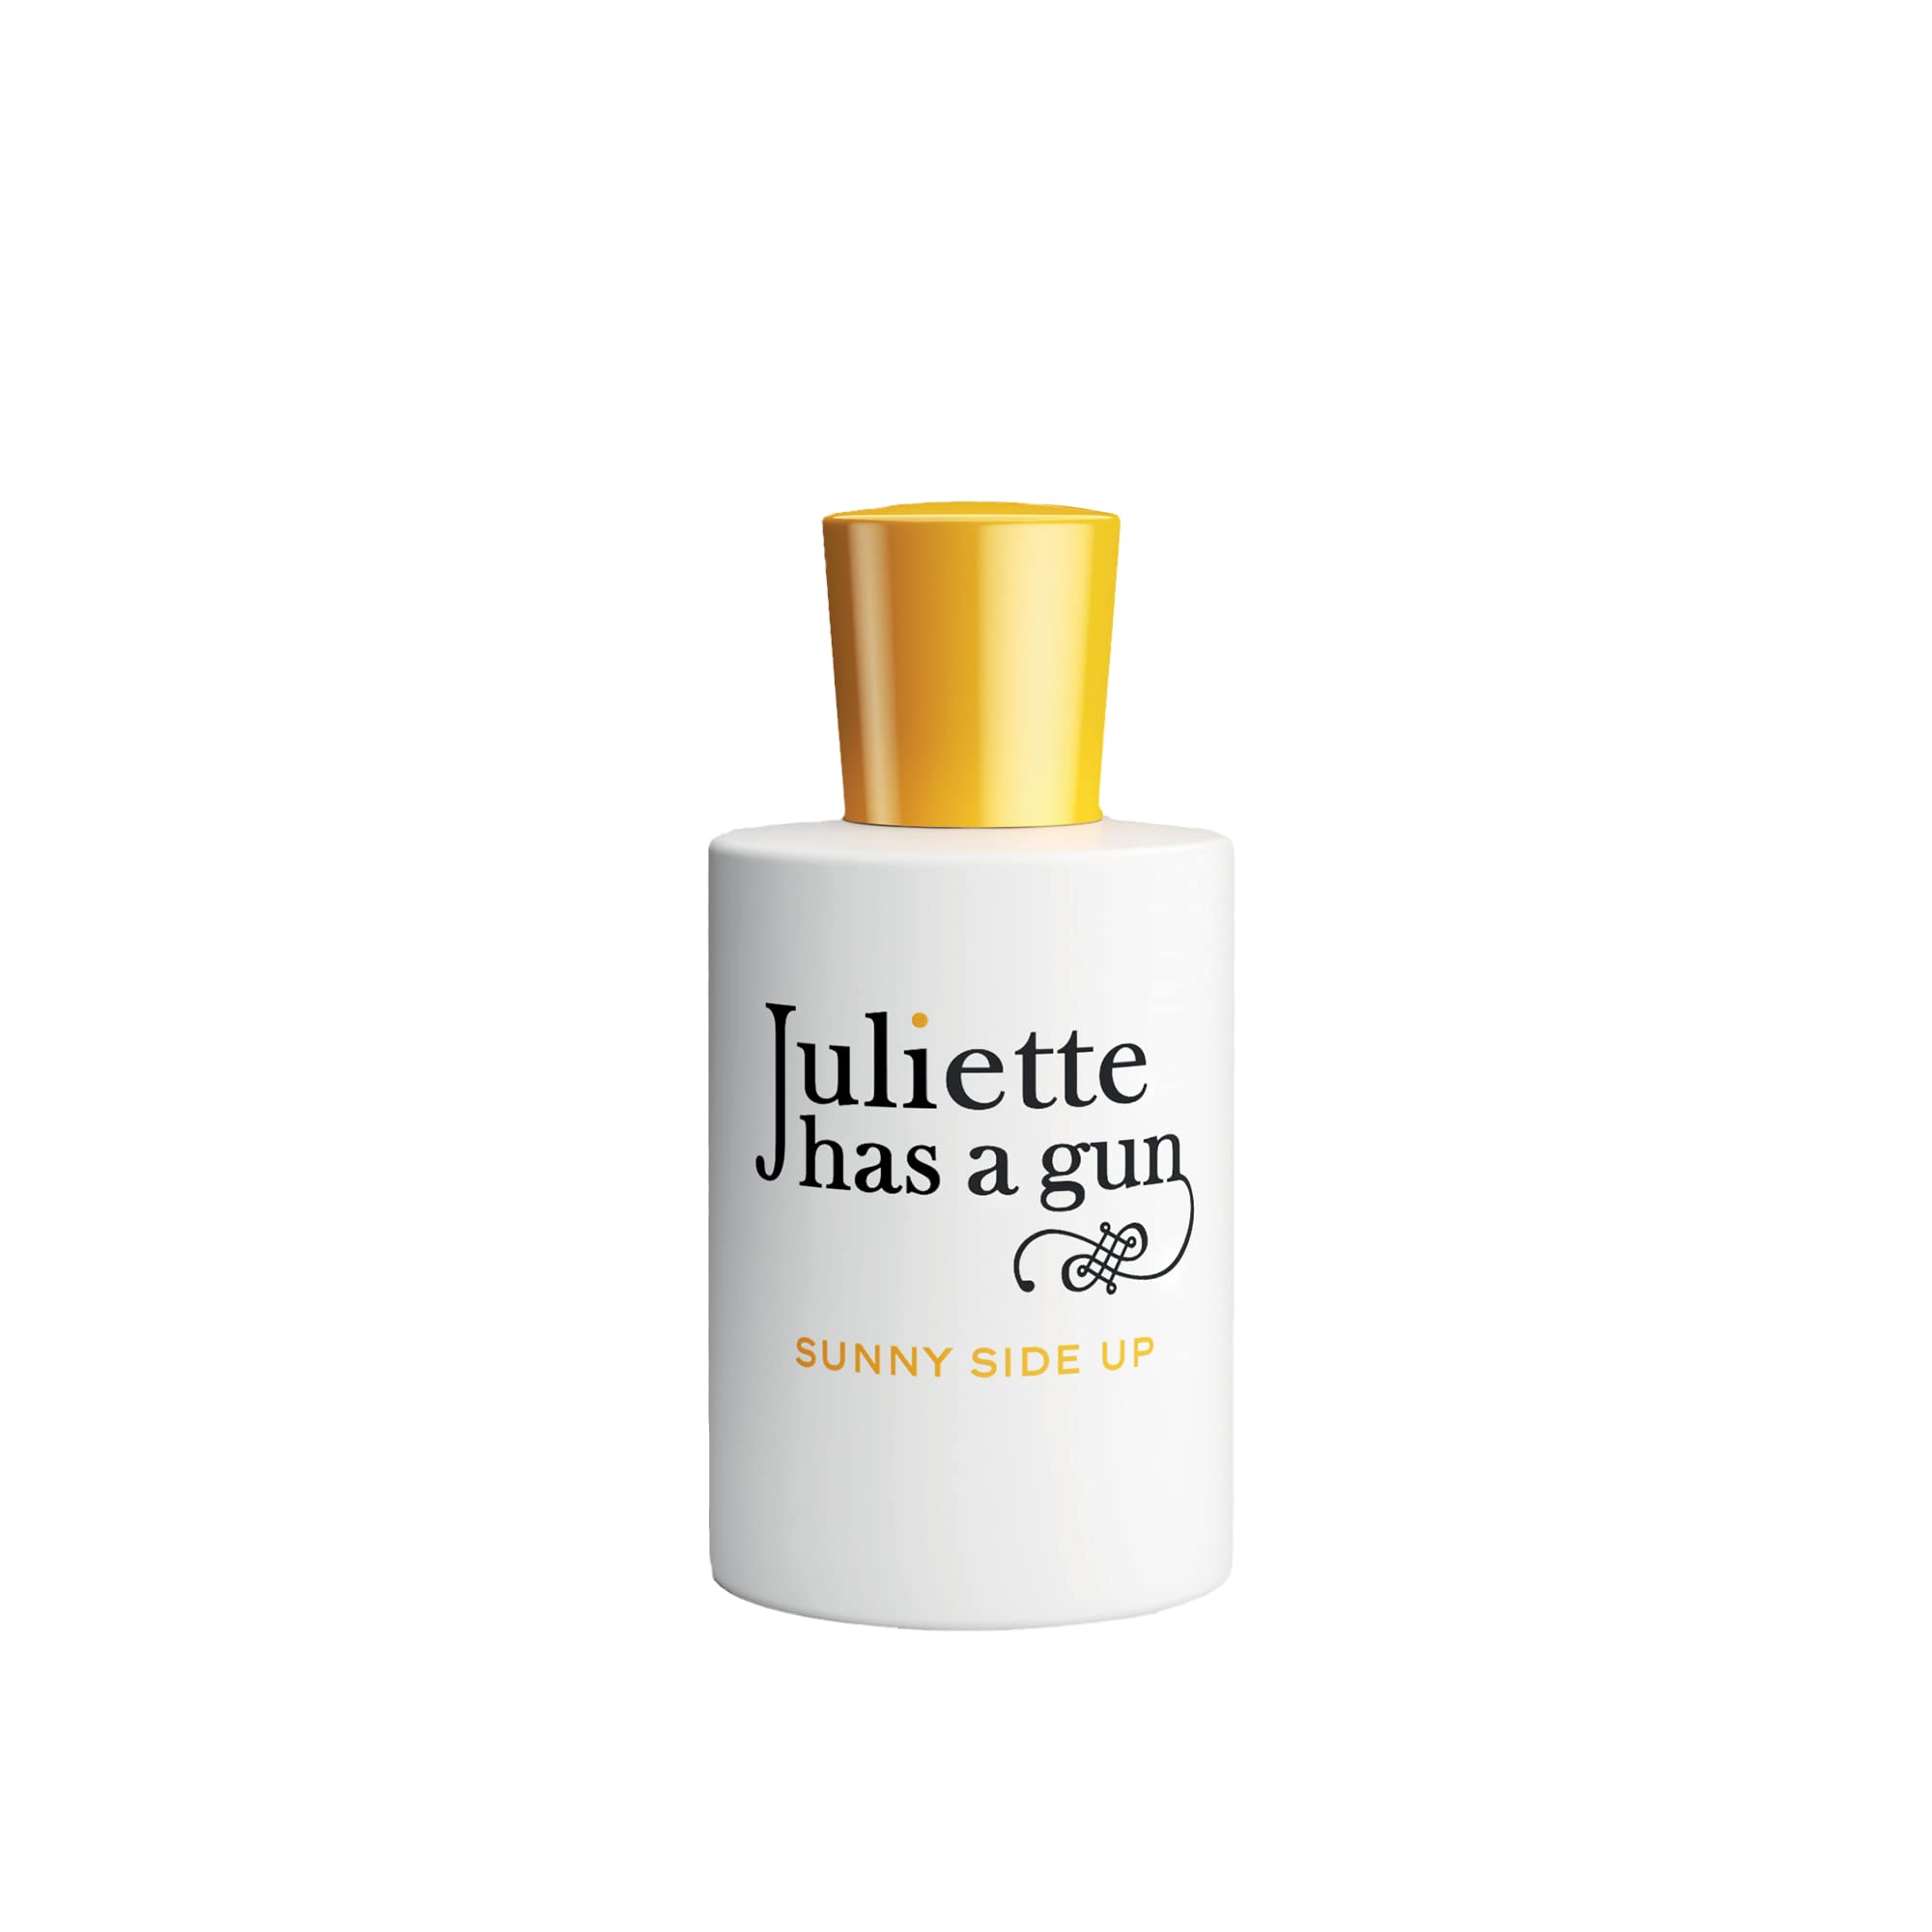 Juliette has a gun SUNNY SIDE UP femme/women, Eau de Parfum Spray, 1er Pack (1 x 50 ml)